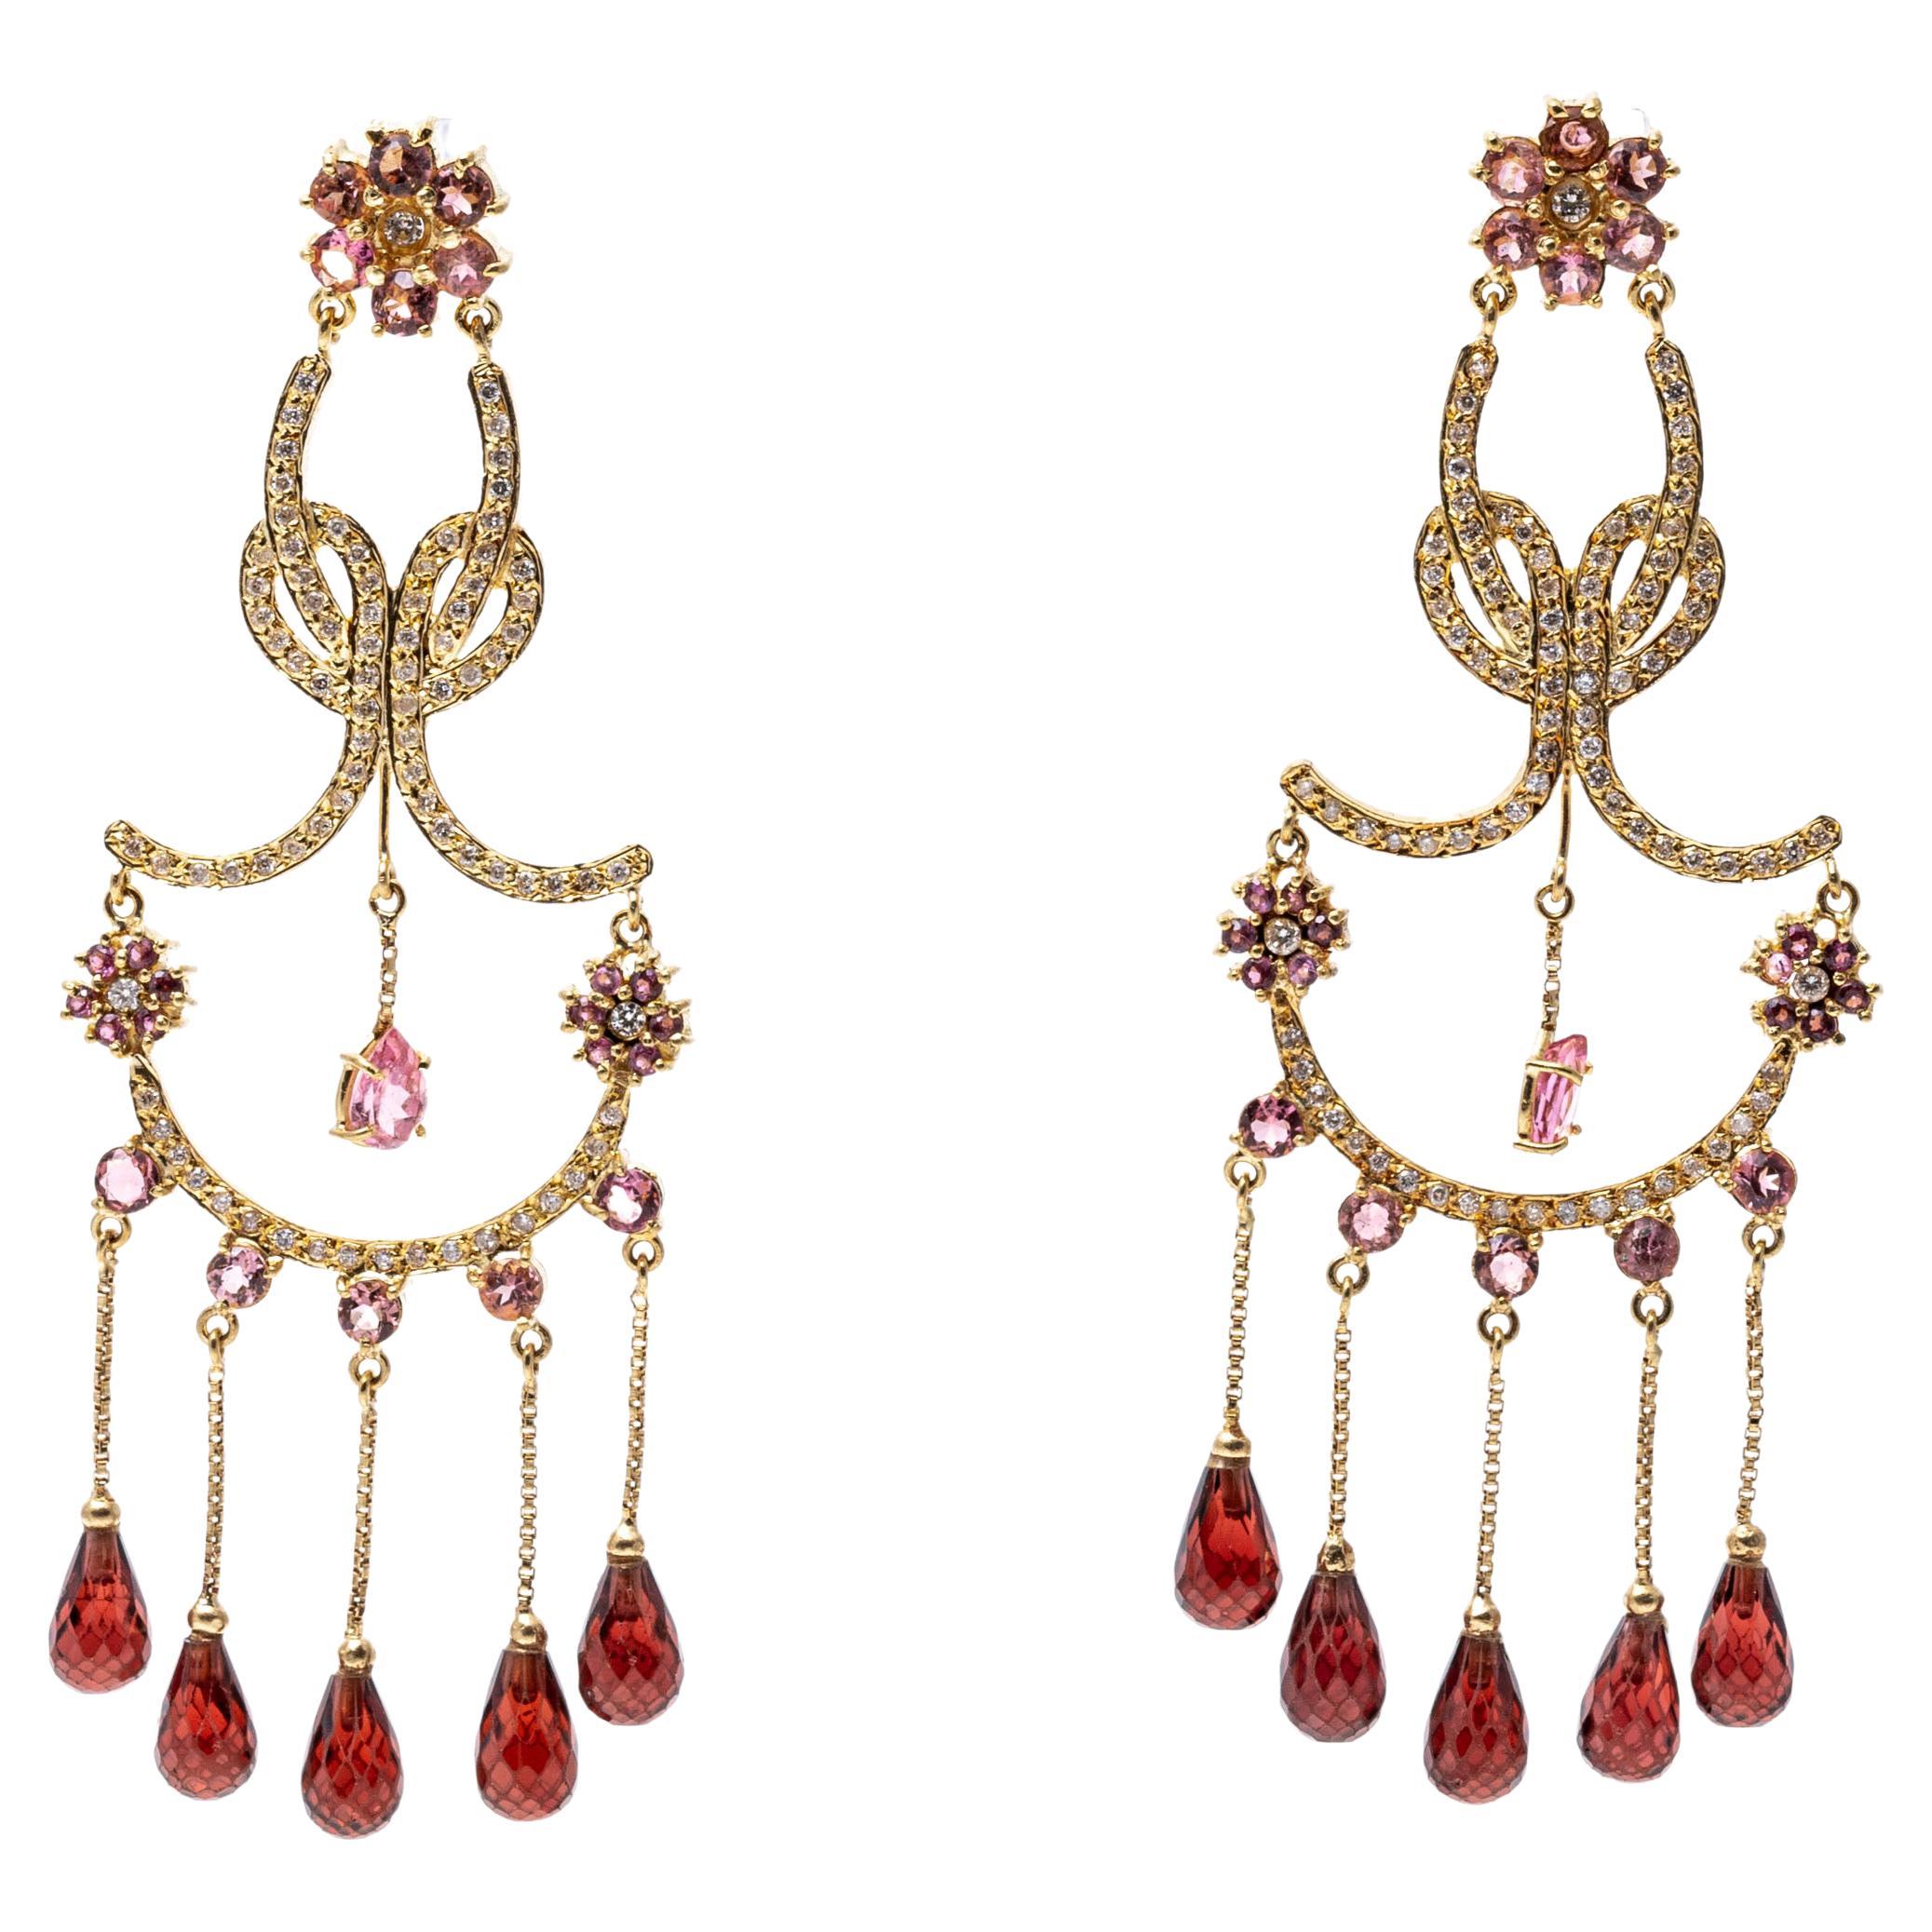 Boucles d'oreilles chandelier en or 14 carats et diamants, grenats et tourmalines roses